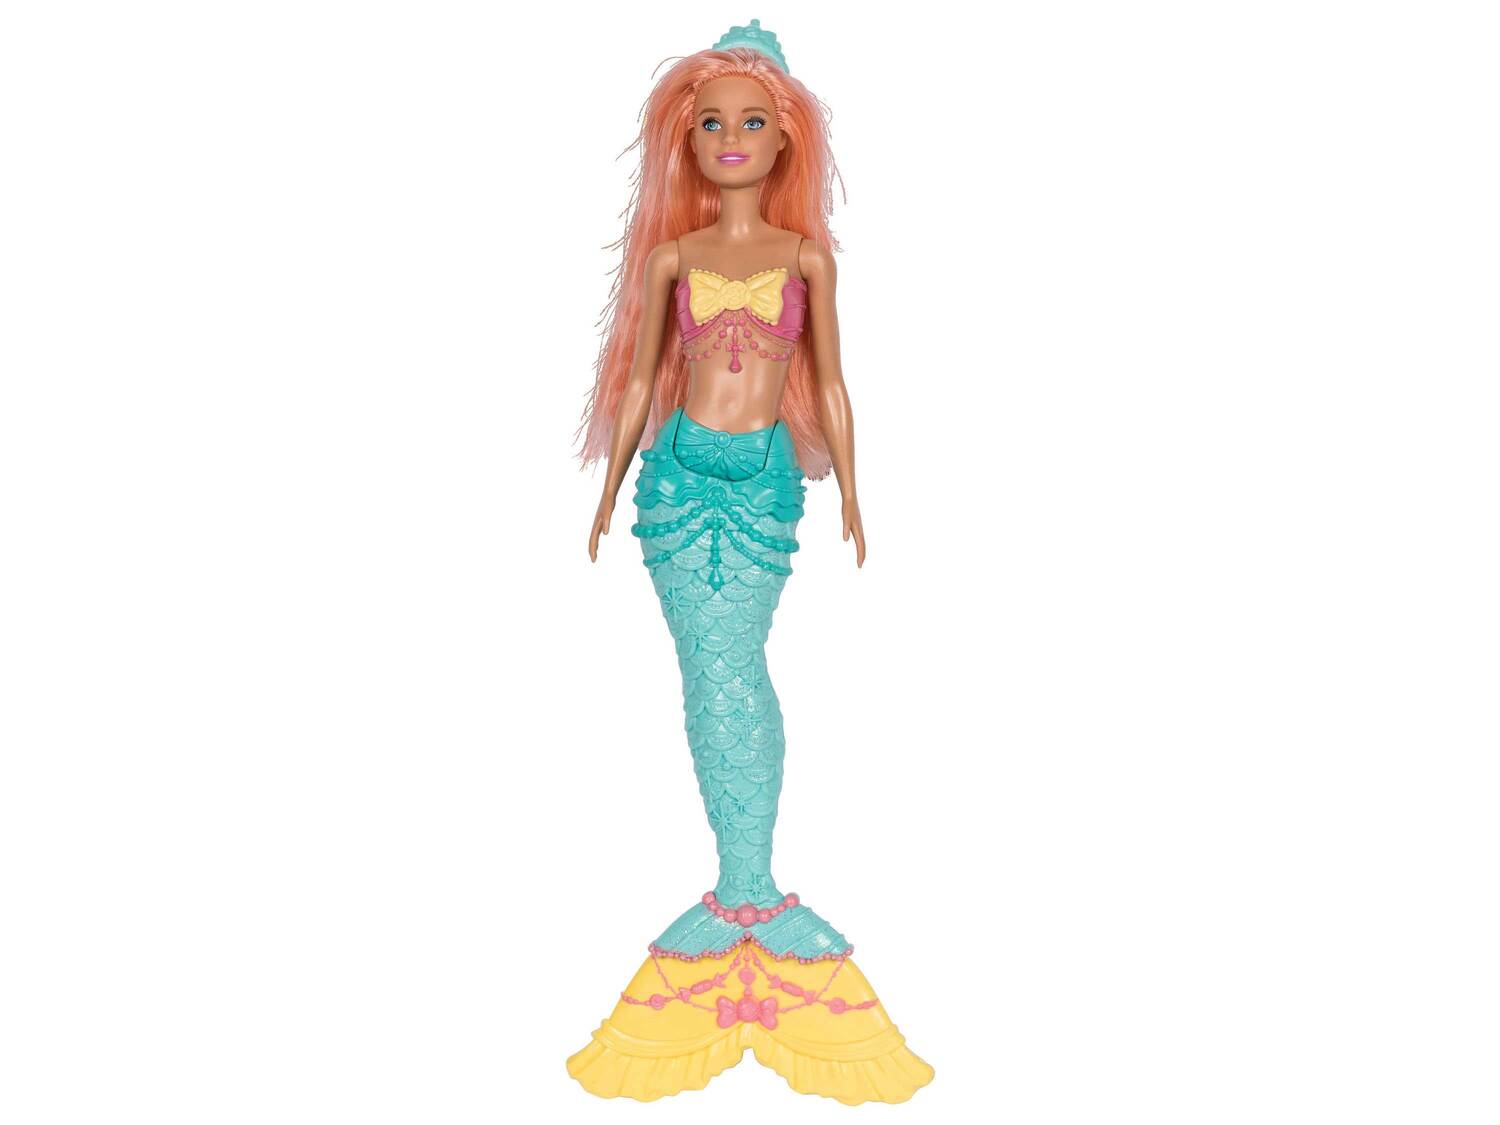 Lalka Barbie z akcesoriami , cena 39,99 PLN  
8 wzorów
Opis